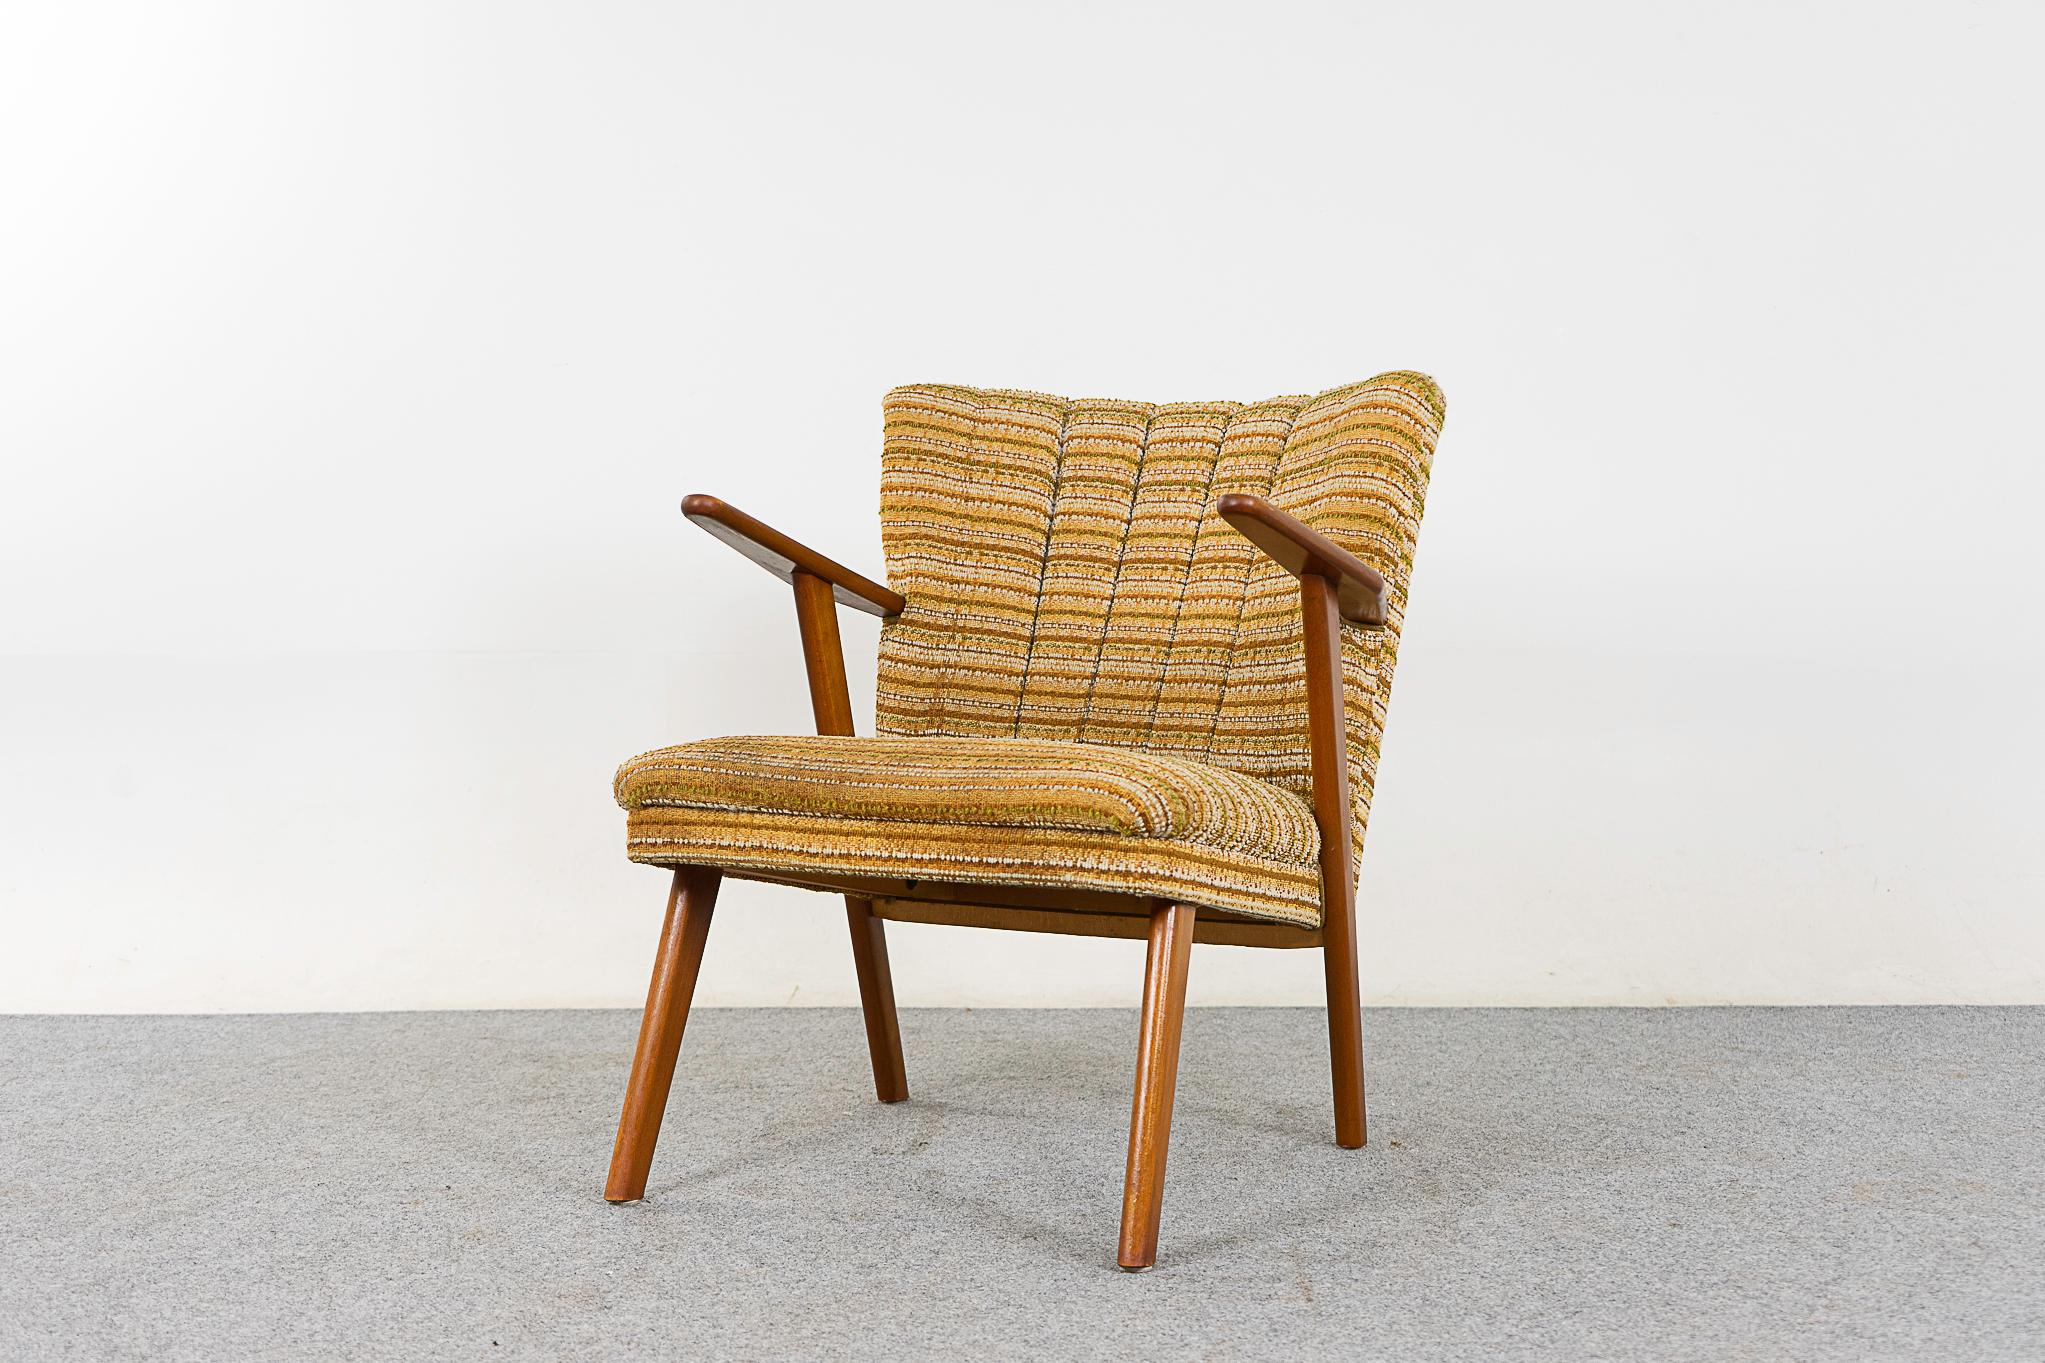 Dänischer Loungesessel aus Buchenholz, um 1950. Charmanter Stuhl mit originellem, strukturiertem, gewelltem Bezug, Gestell aus massivem Buchenholz mit gespreizten Beinen. Verkauft in 